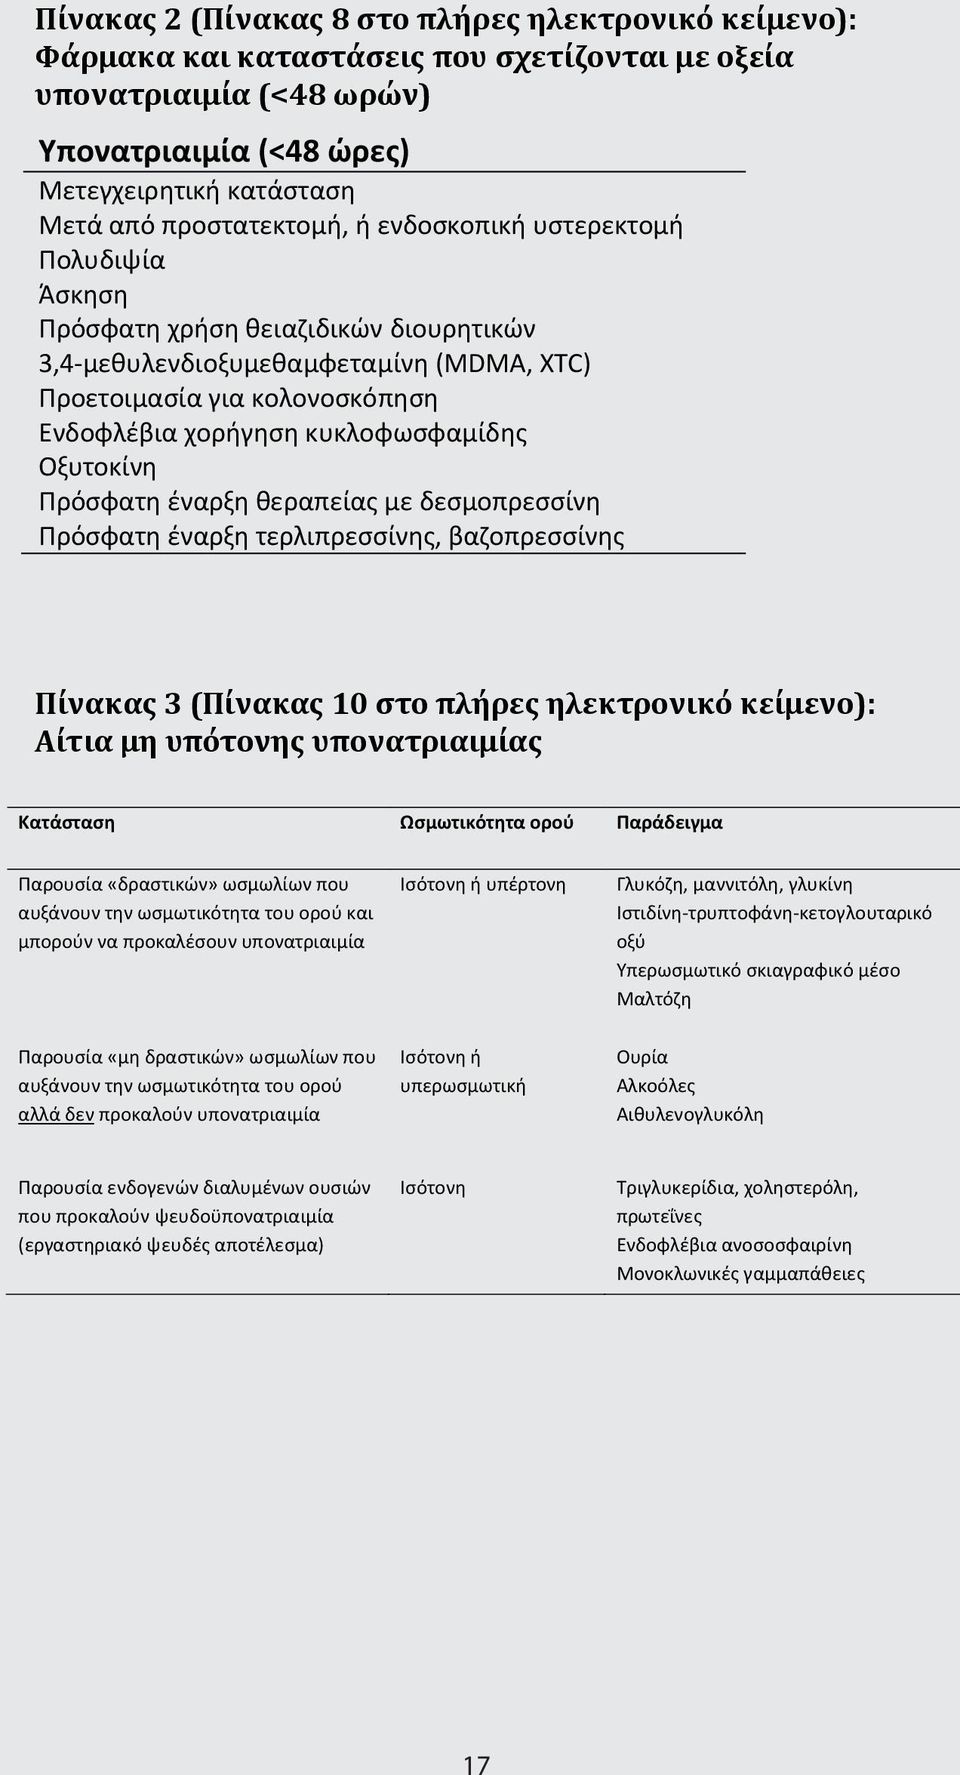 κυκλοφωσφαμίδης Οξυτοκίνη Πρόσφατη έναρξη θεραπείας με δεσμοπρεσσίνη Πρόσφατη έναρξη τερλιπρεσσίνης, βαζοπρεσσίνης Πίνακας 3 (Πίνακας 10 στο πλήρες ηλεκτρονικό κείμενο): Αίτια μη υπότονης